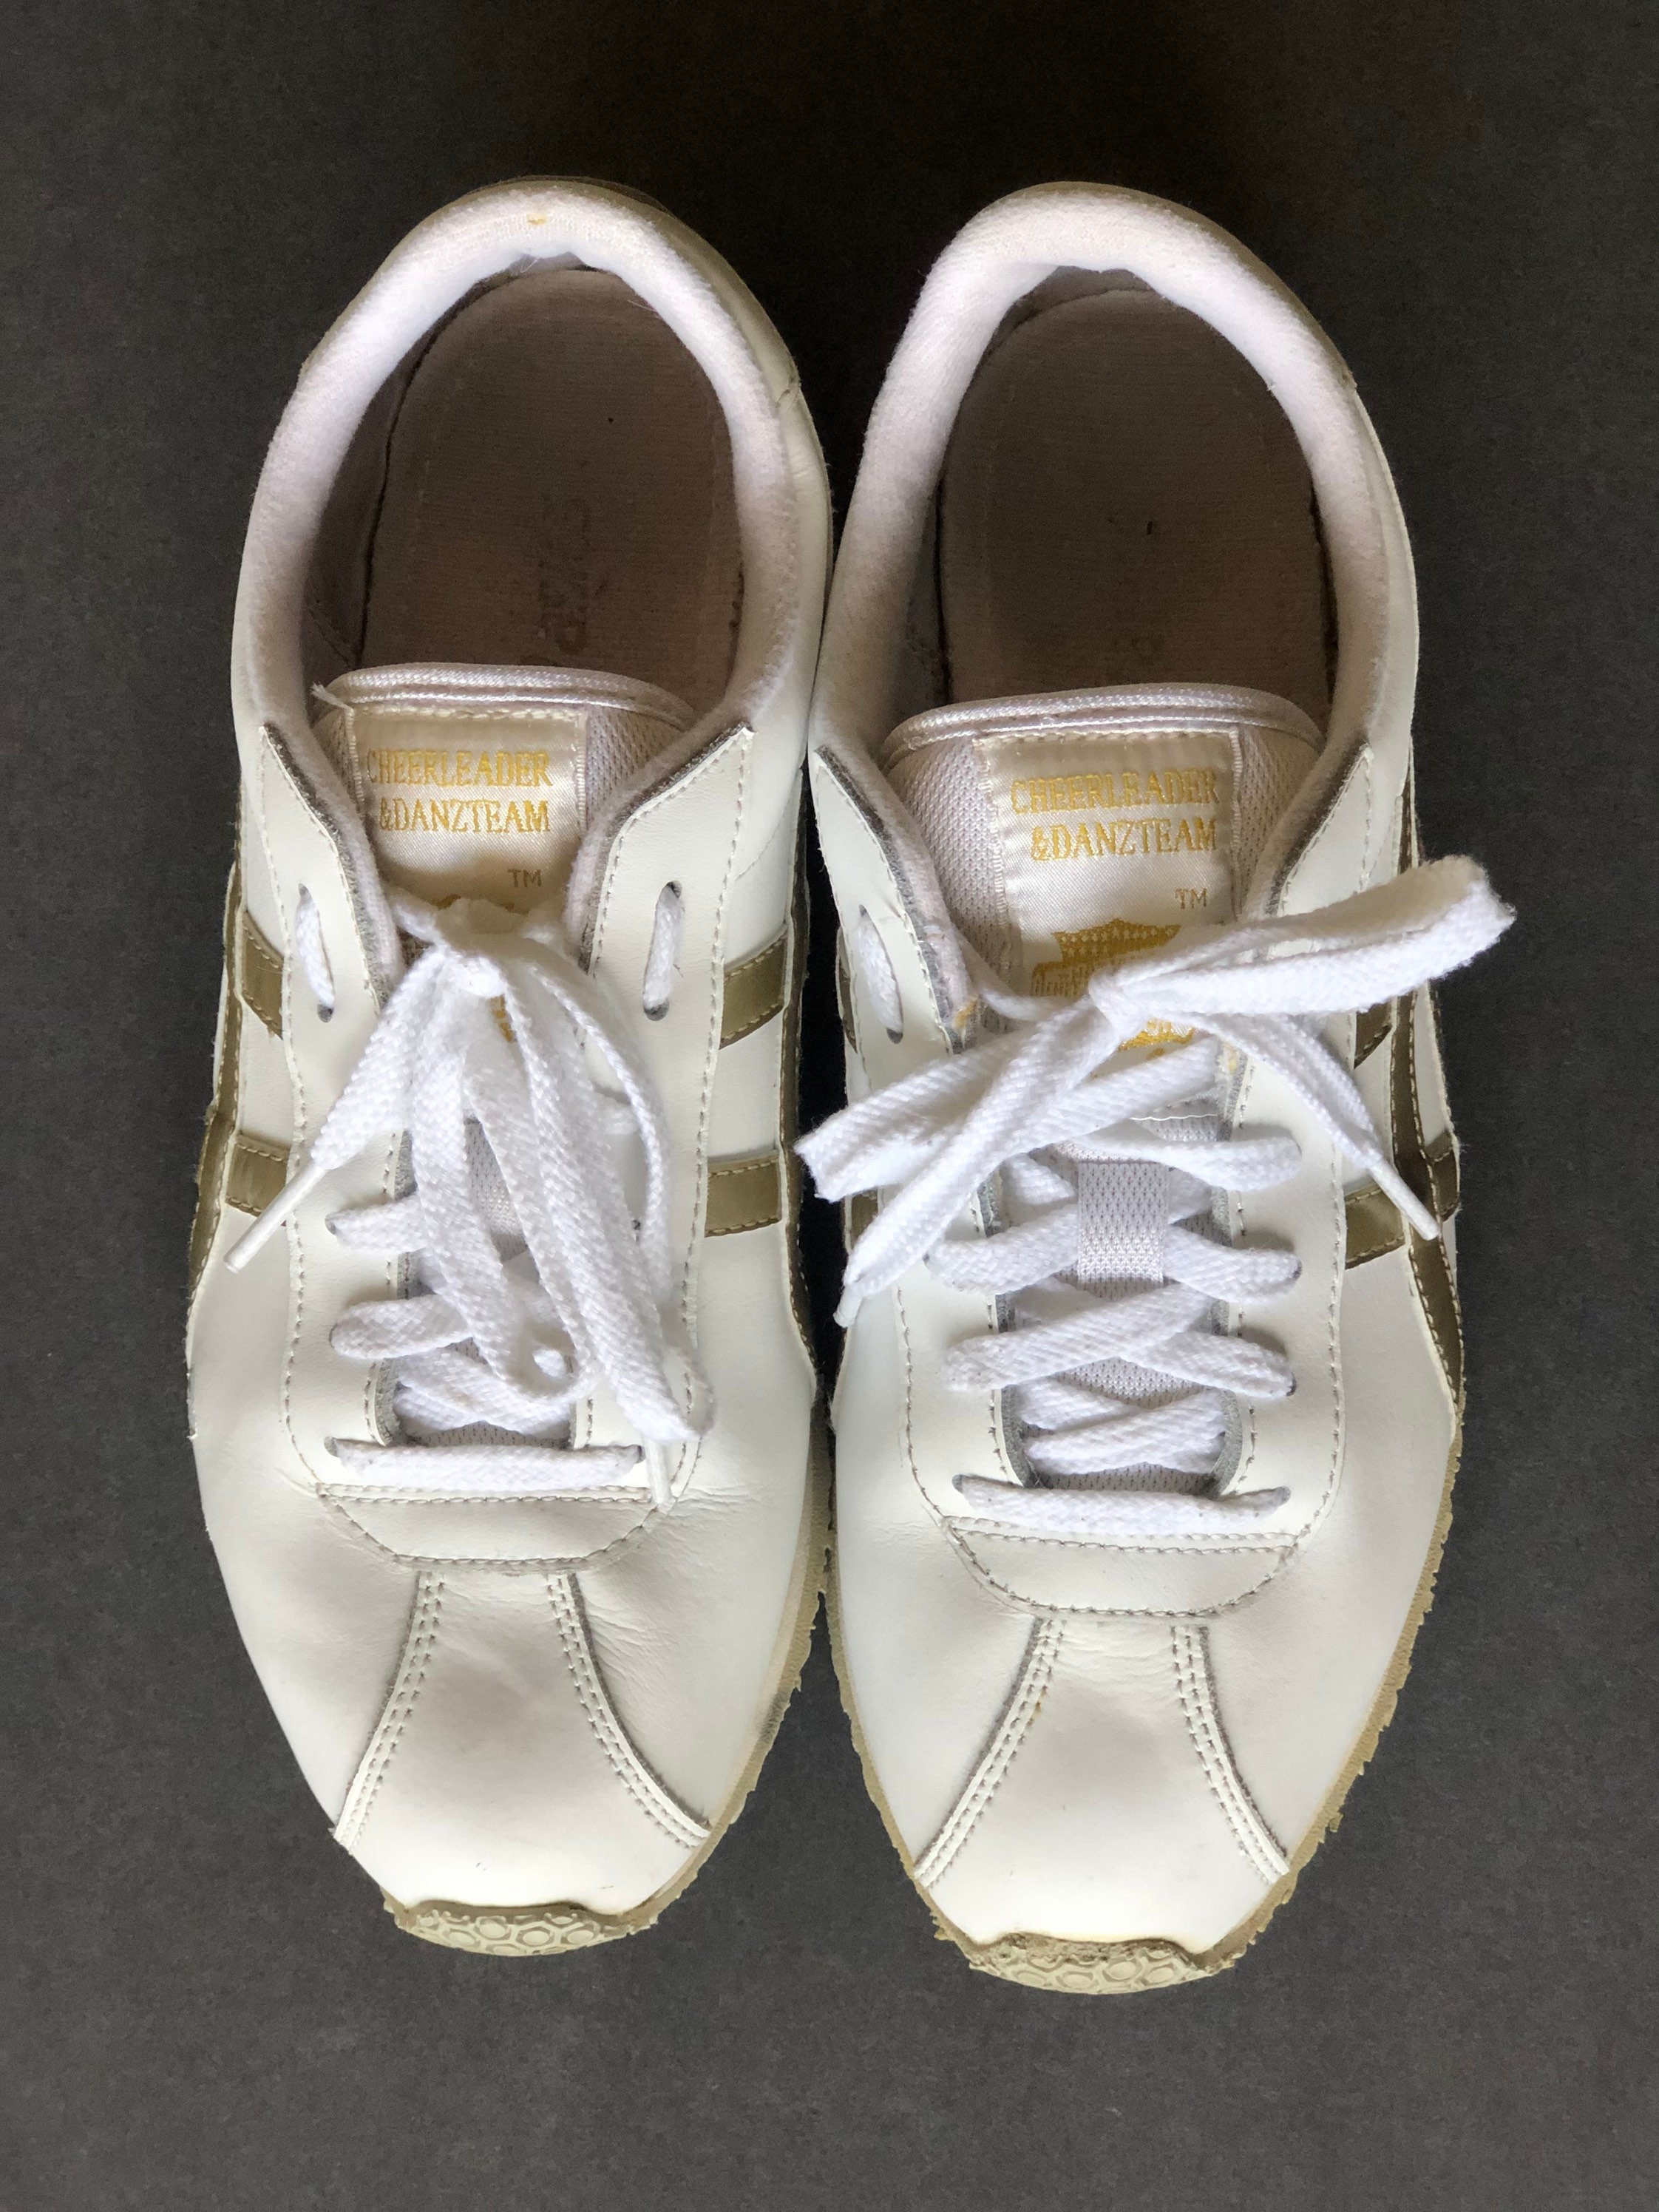 Asics Cheerleading Shoes 7.5 Vintage White Gold ASICS Retro | Etsy